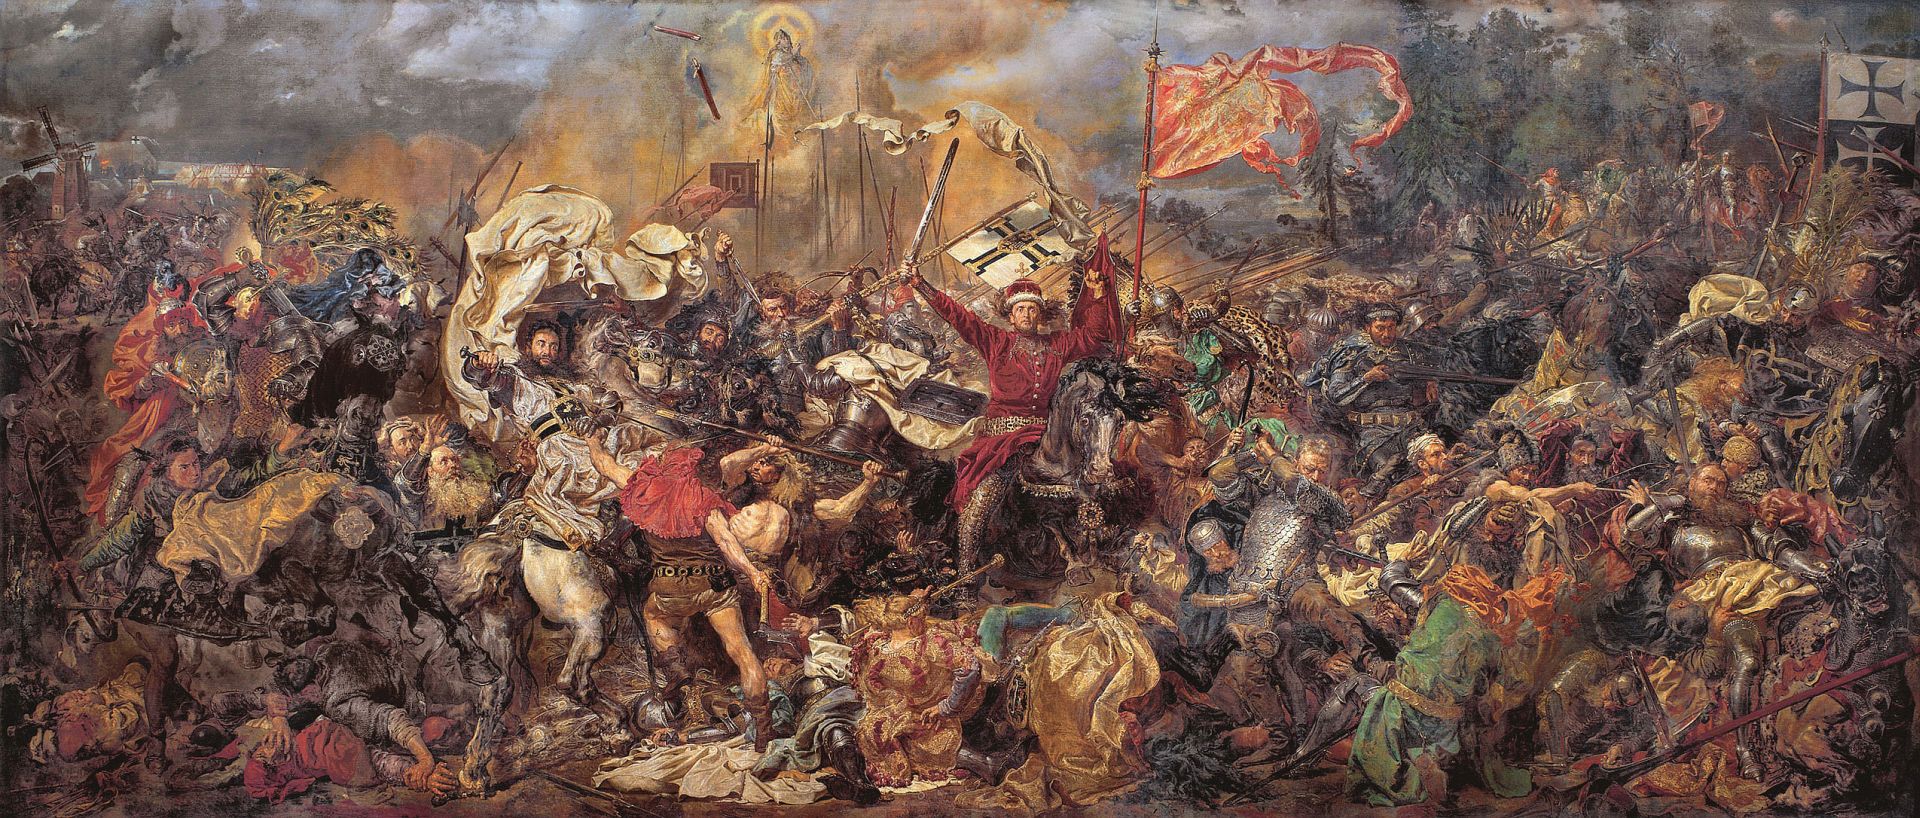 Matejko a Battle of Grunwald